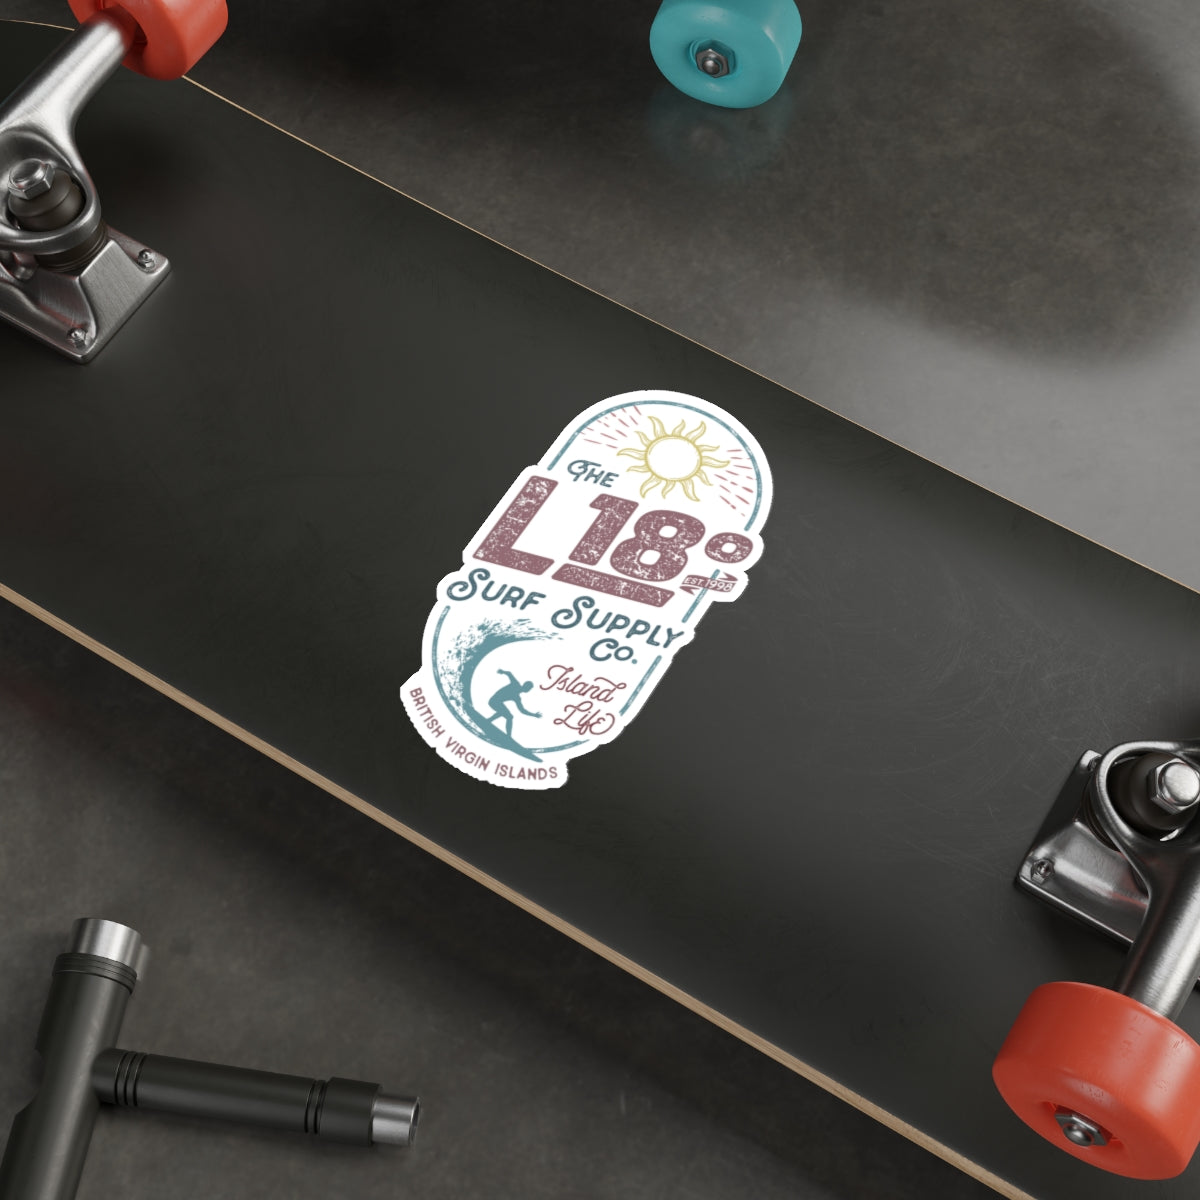 "L18º Surf Supply Co." Die-Cut Sticker